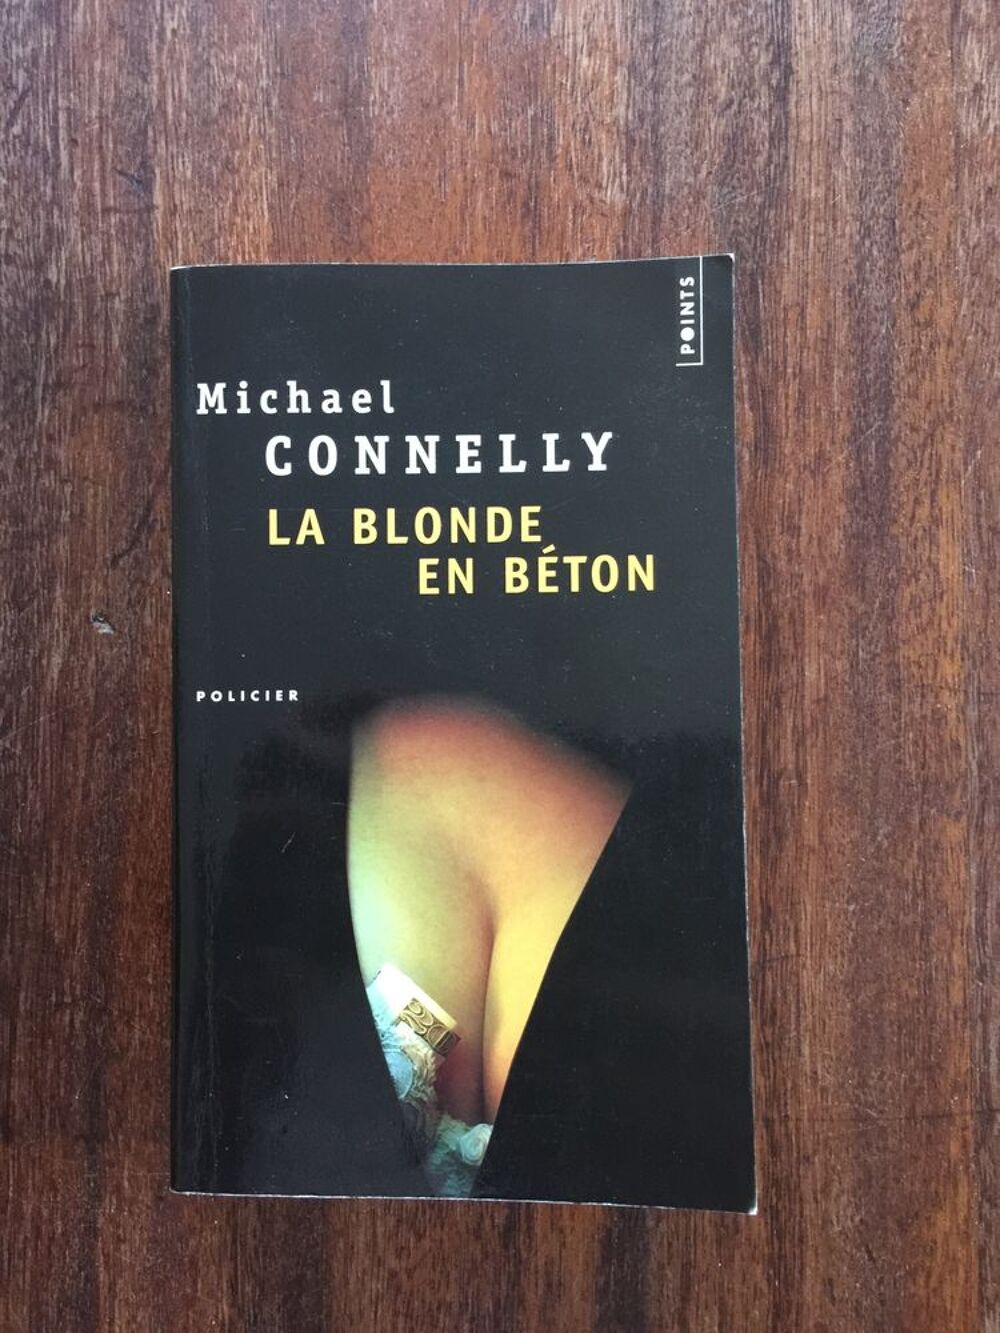 Livre Policier &quot; La Blonde en b&eacute;ton &quot; - Michael C Livres et BD